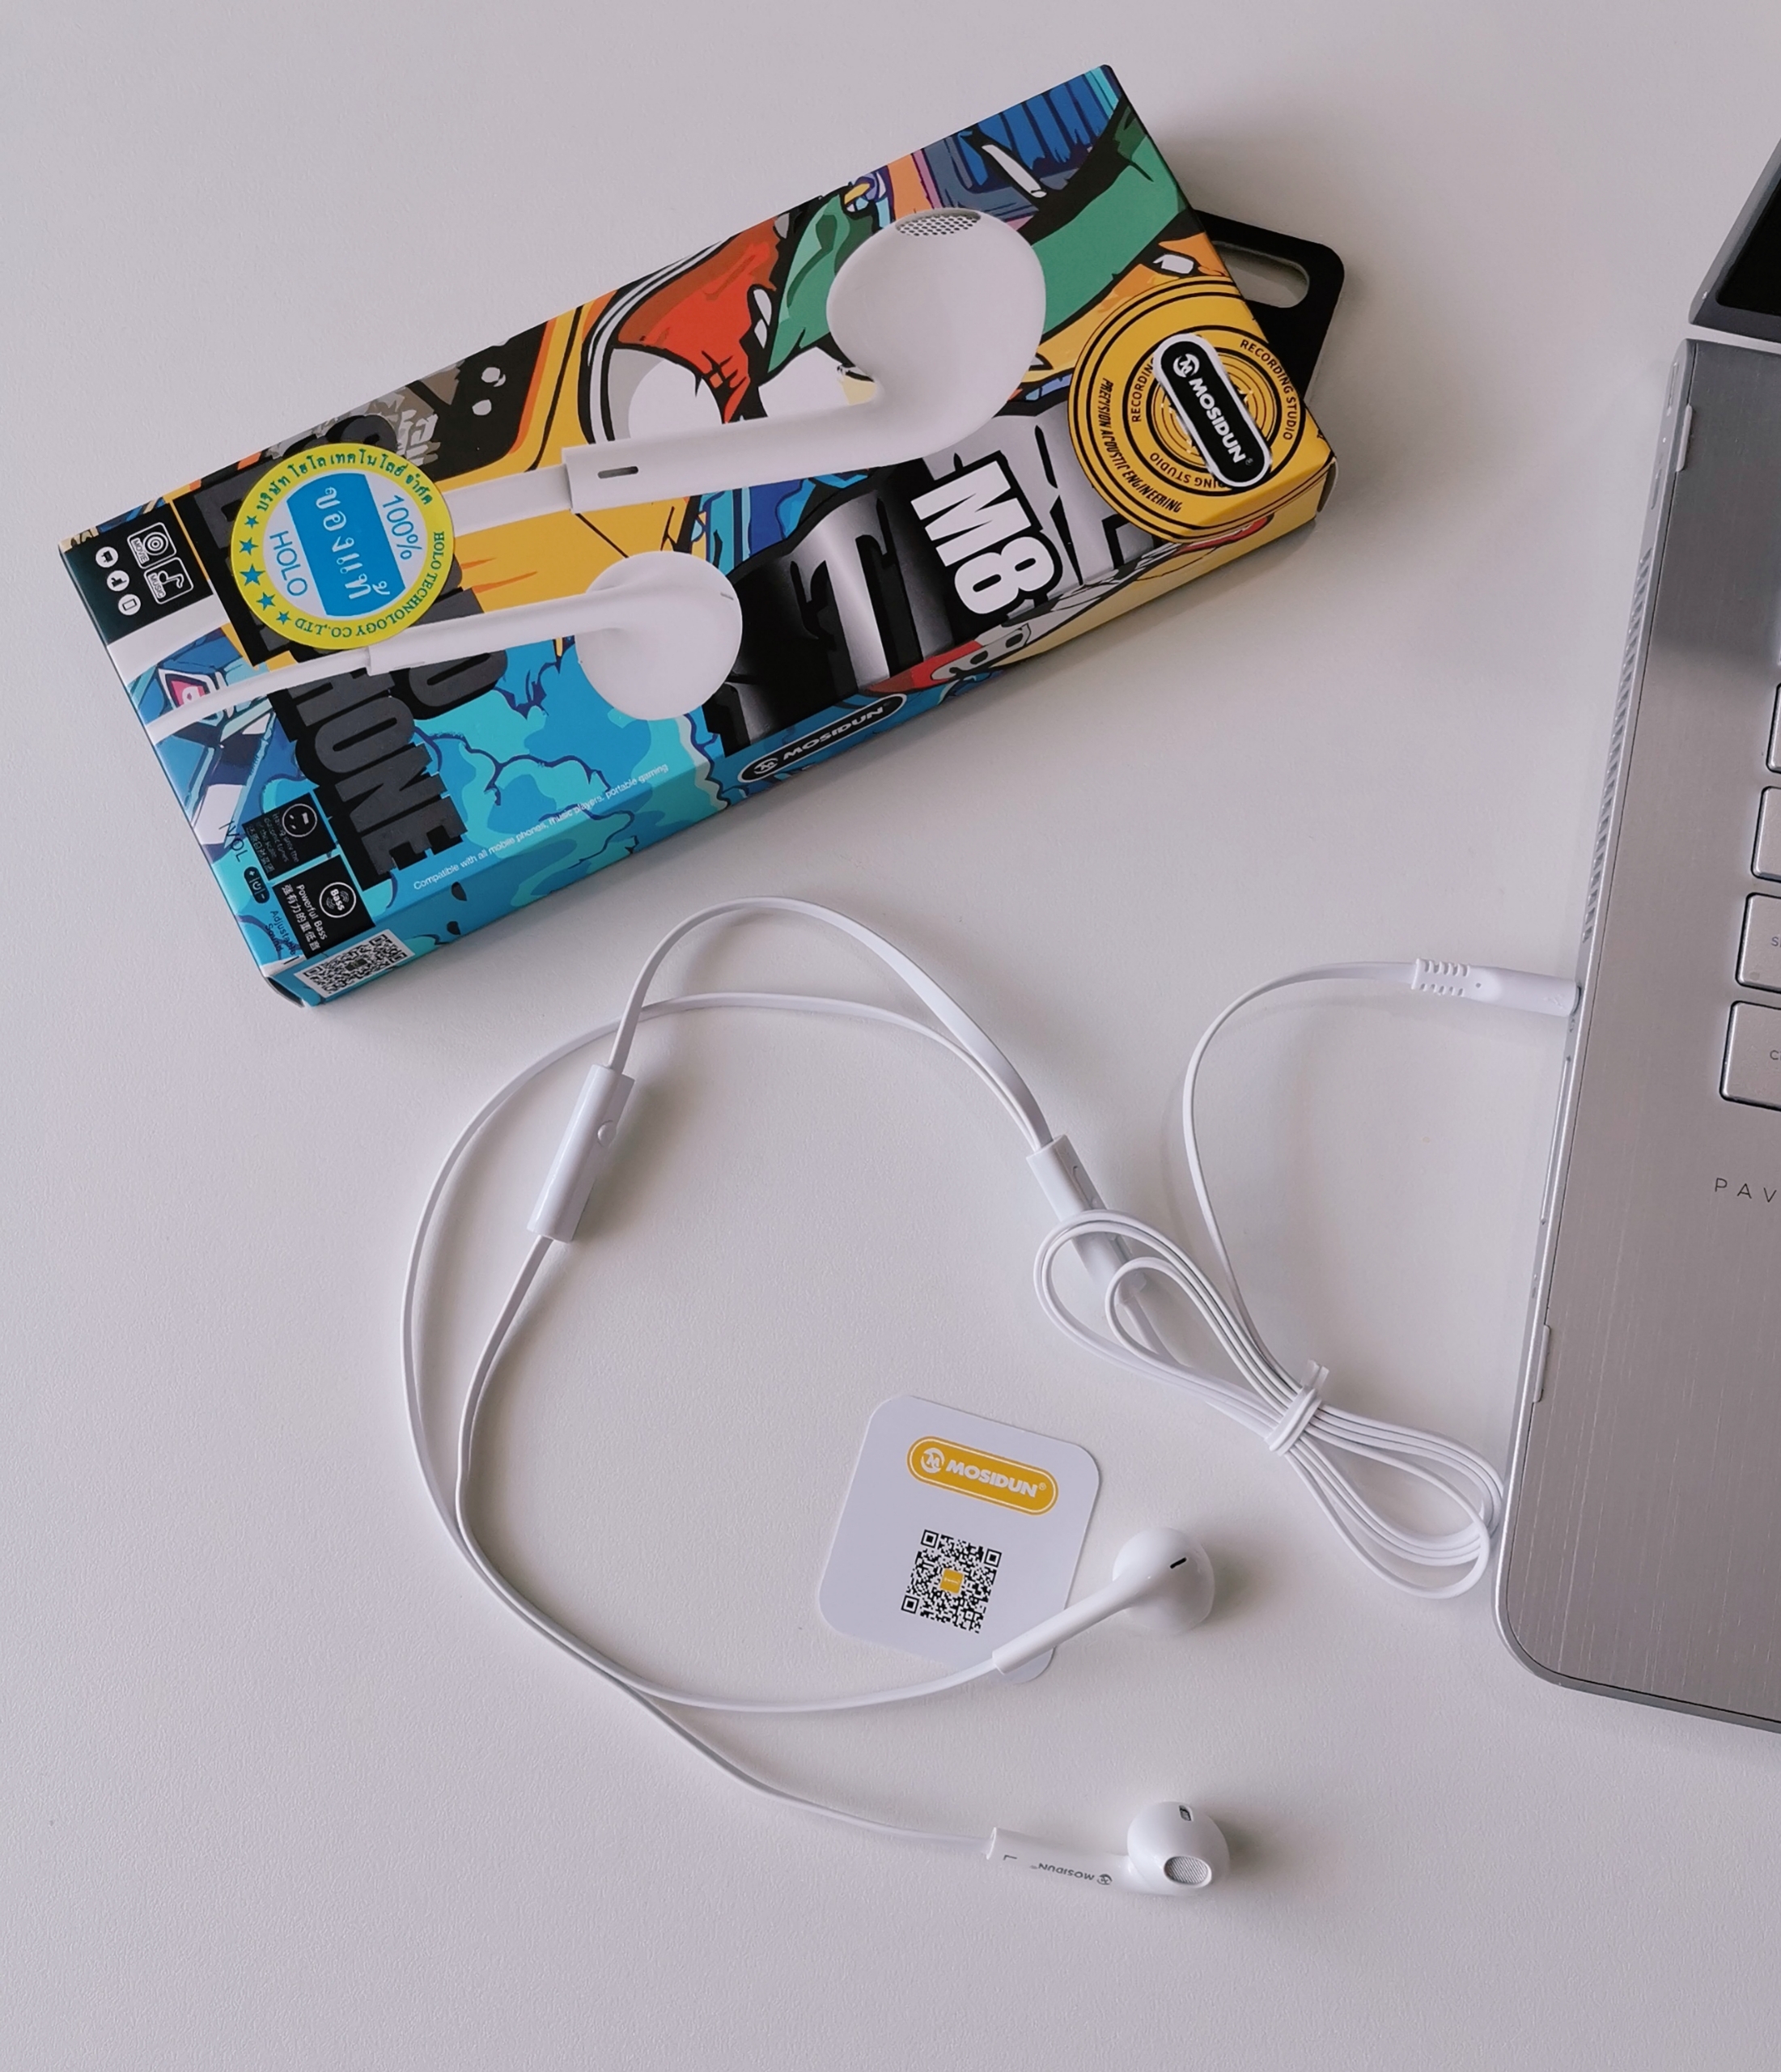 ข้อมูลเพิ่มเติมของ Mosidun รุ่น M8 หูฟังสมอลทอร์ค(แบบ3.5mm) ใช้ได้ทั้งแอนดรอยและไอโฟน เสียงดีมีคุณภาพ Stereo Eraphone